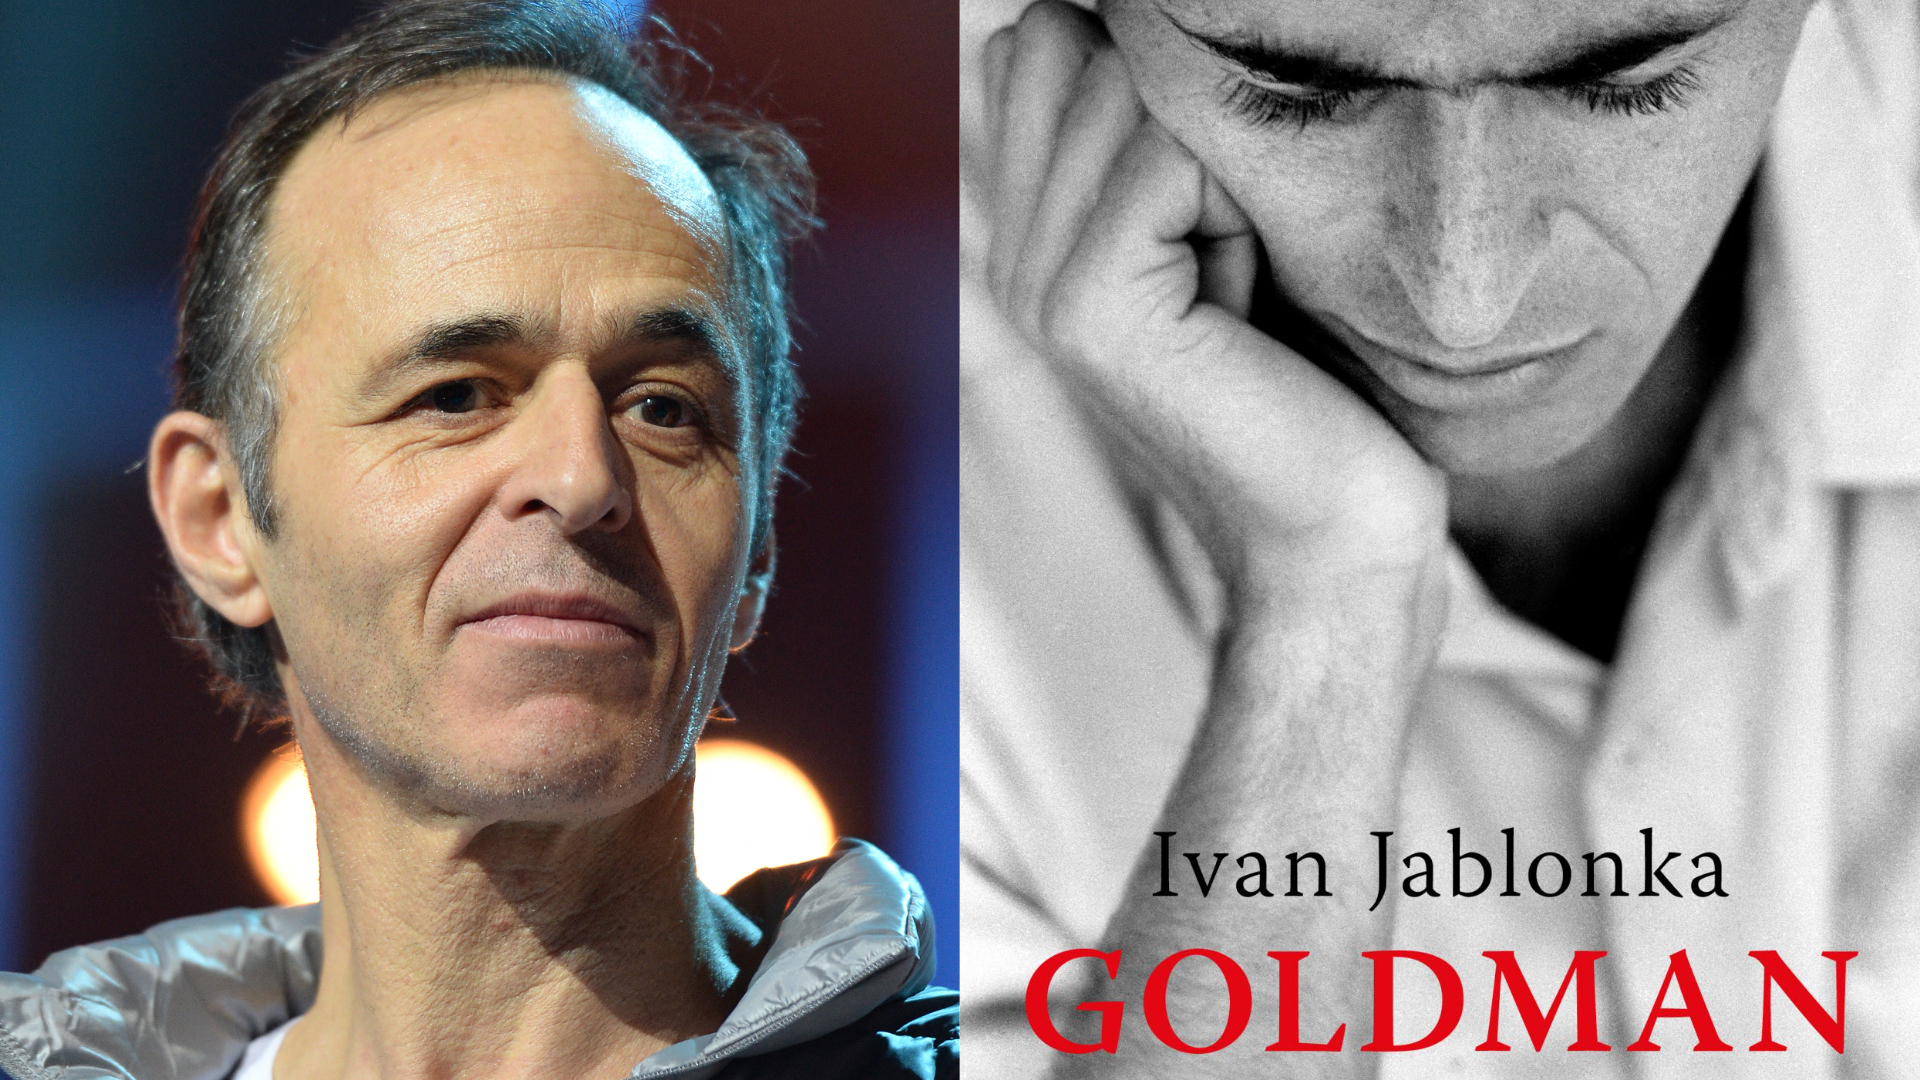 Jean-Jacques Goldman: Ivan Jablonka s'interroge sur la fin du «goldmanisme» dans son dernier livre